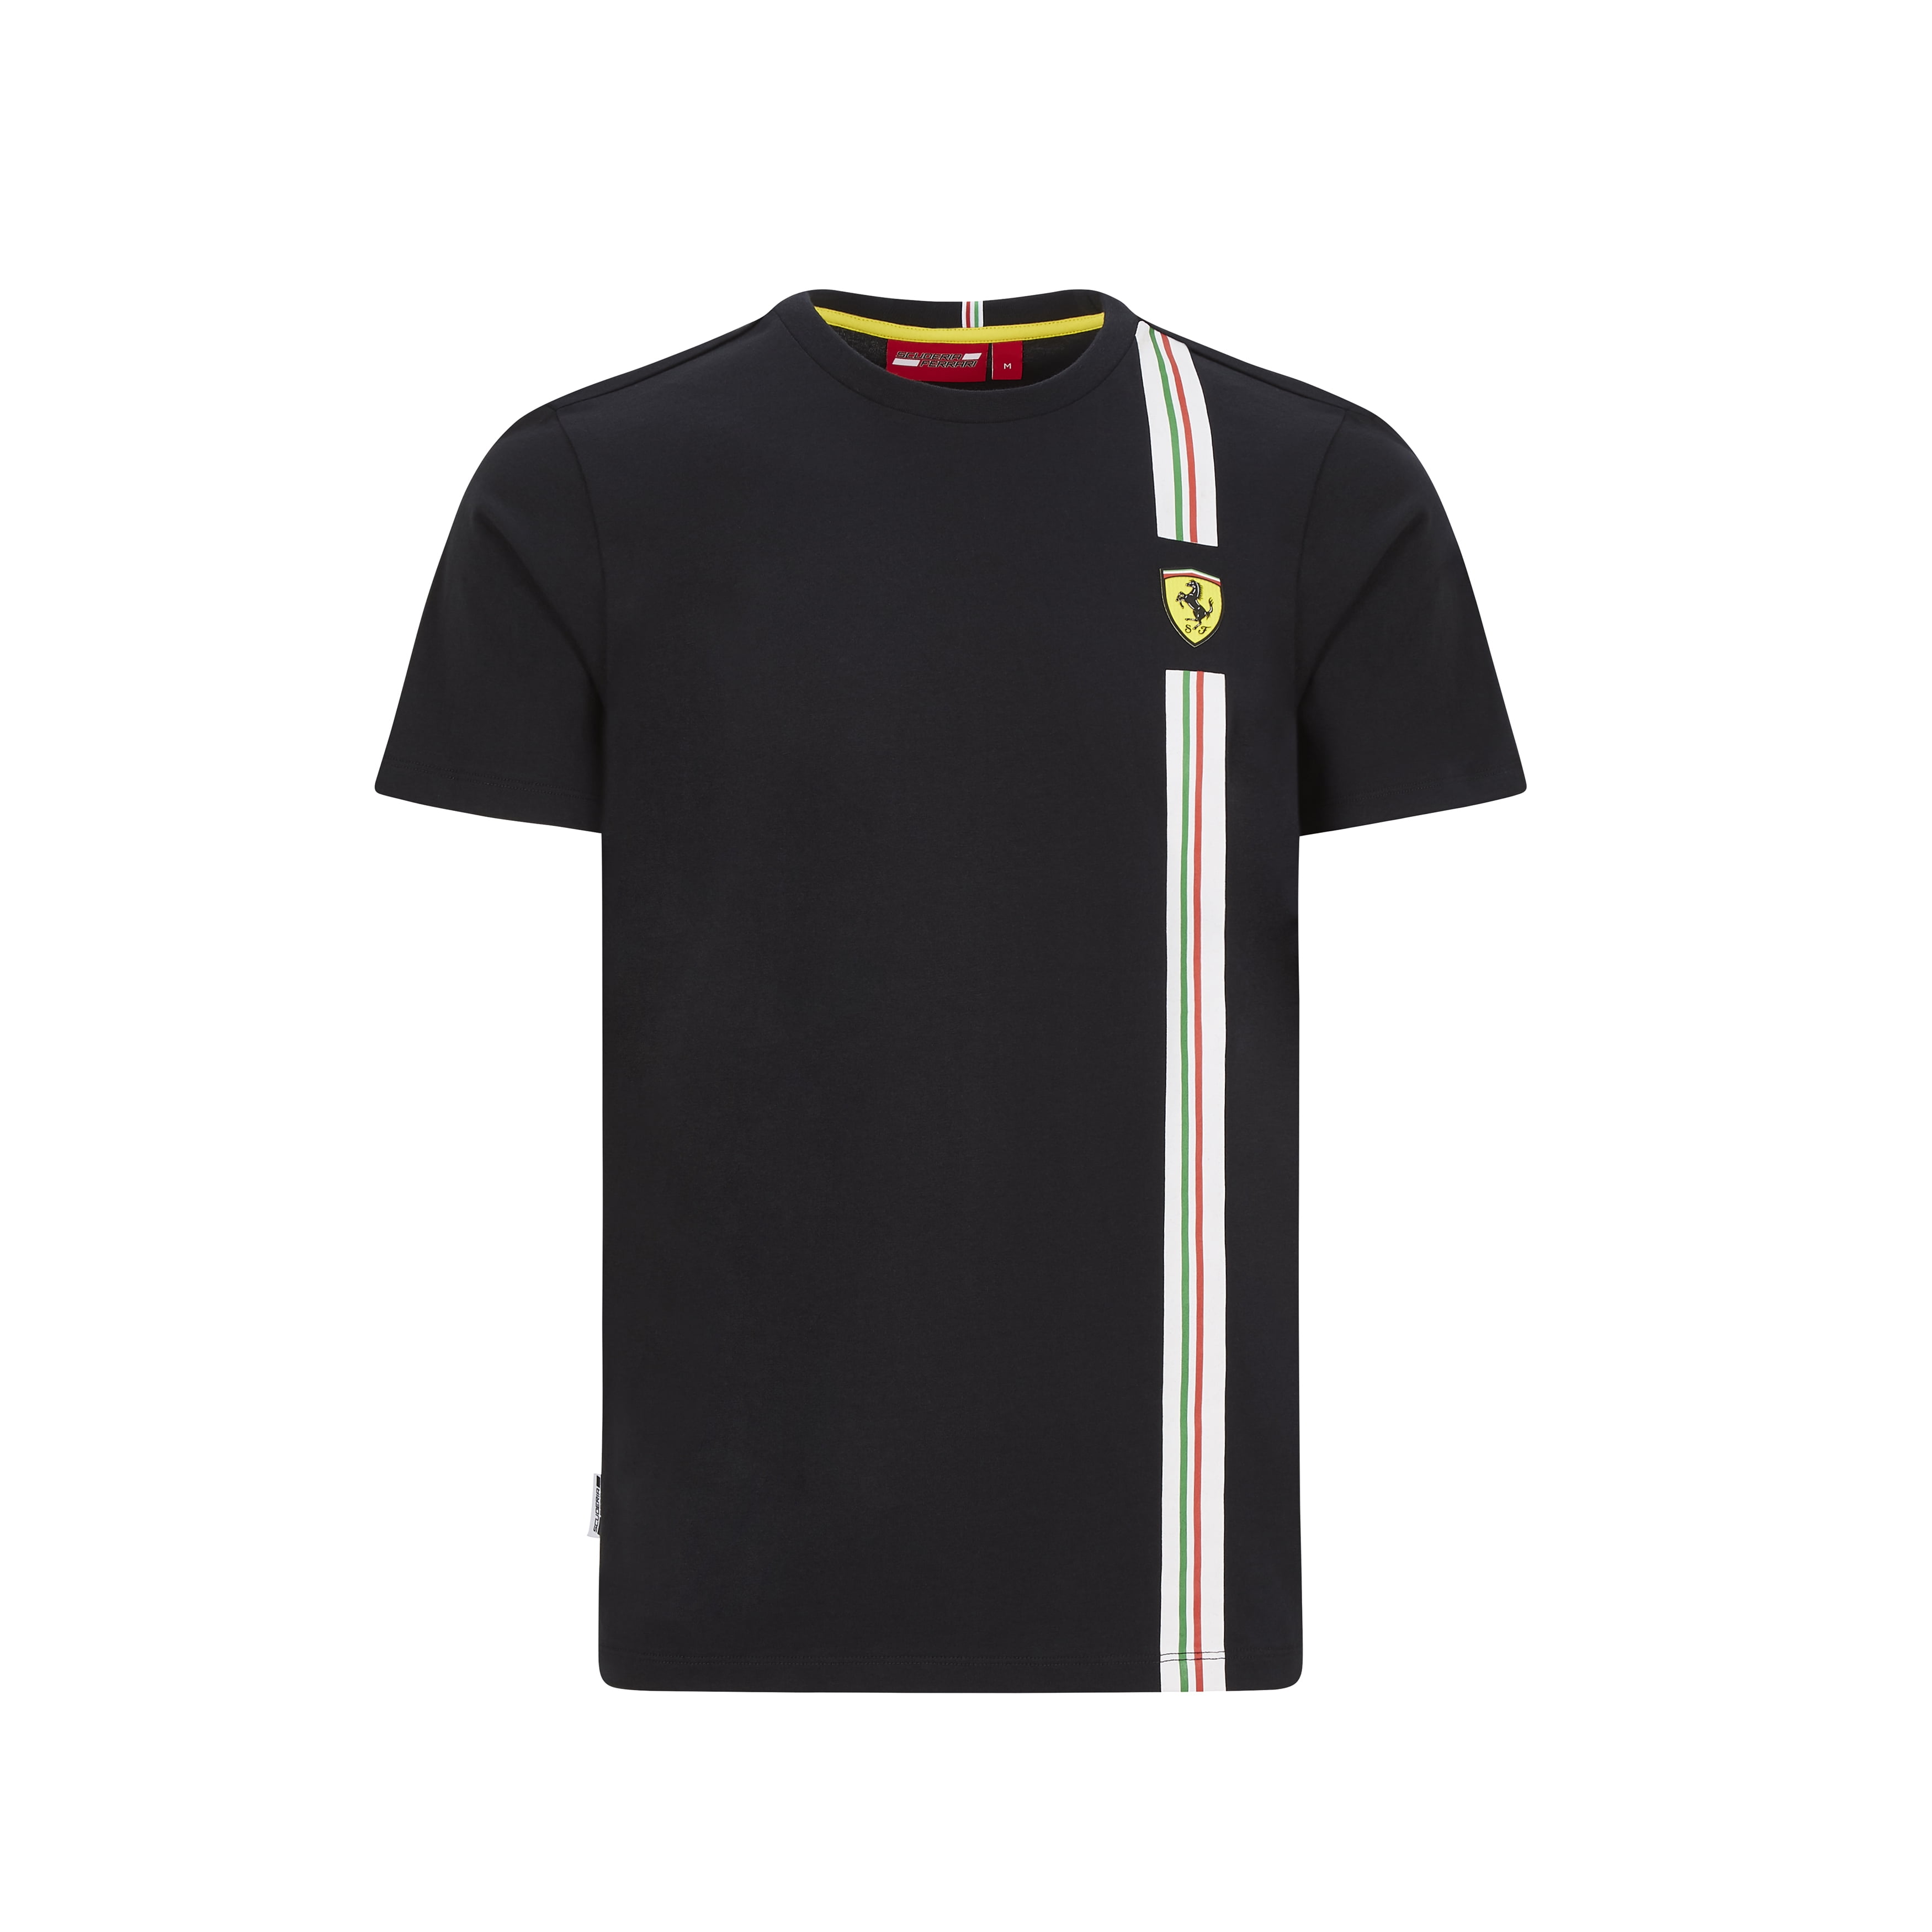 Scuderia Ferrari - Scuderia Ferrari F1 Men's Italian Flag T-Shirt Black ...